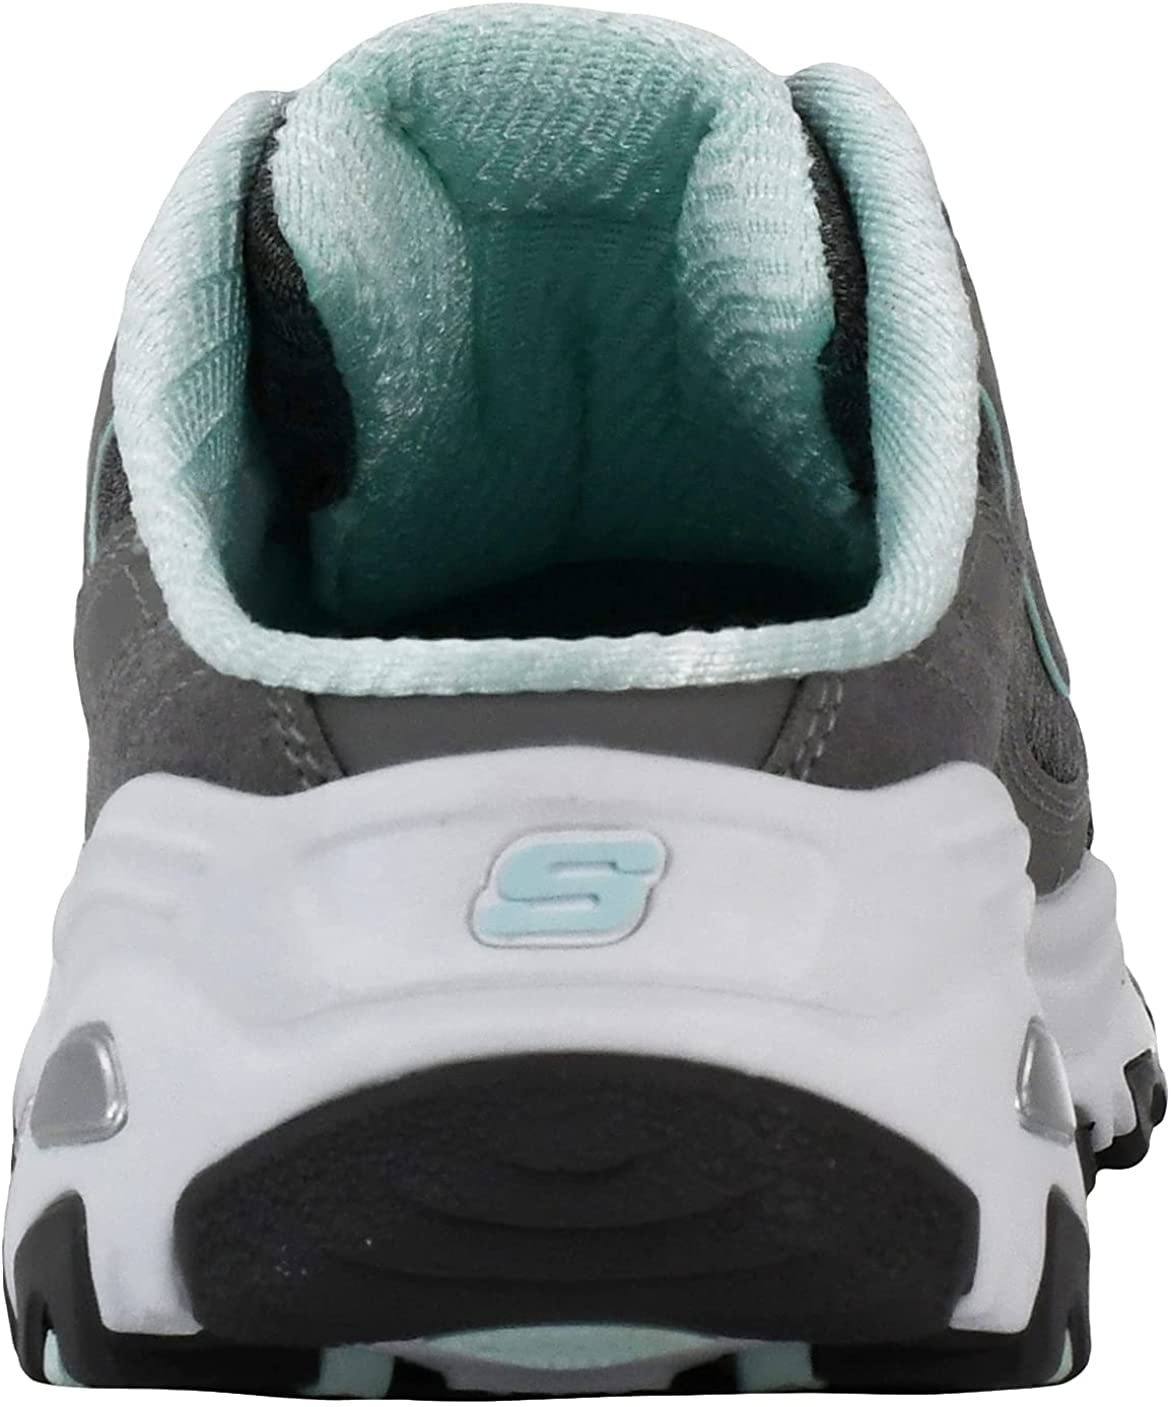 Andre steder Nogen etc Skechers Women's D'Lites Slip-On Mule Sneaker Grey/Mint 6.5 - Walmart.com